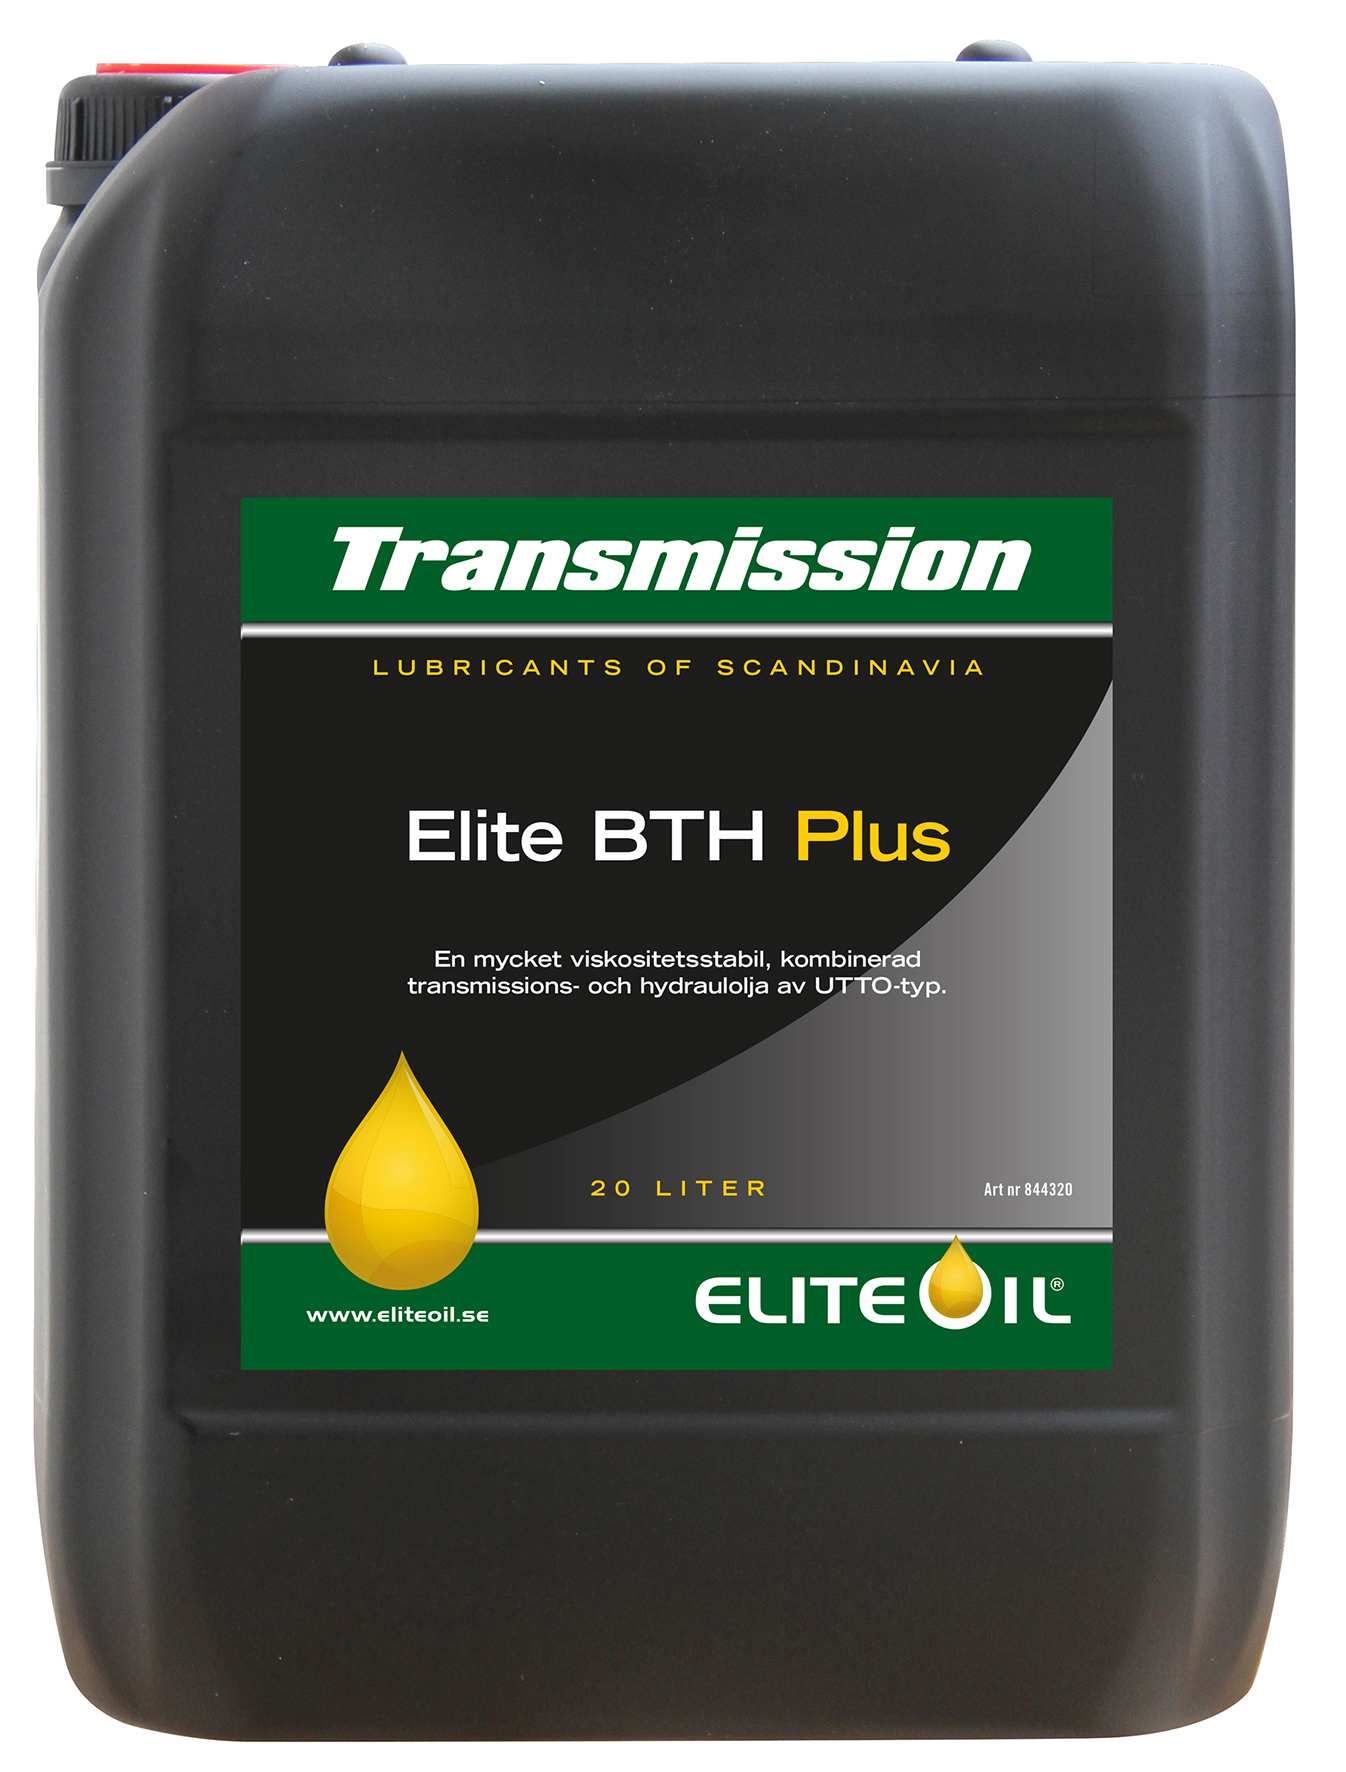 Elite BTH Plus, 20 liter dunk-image